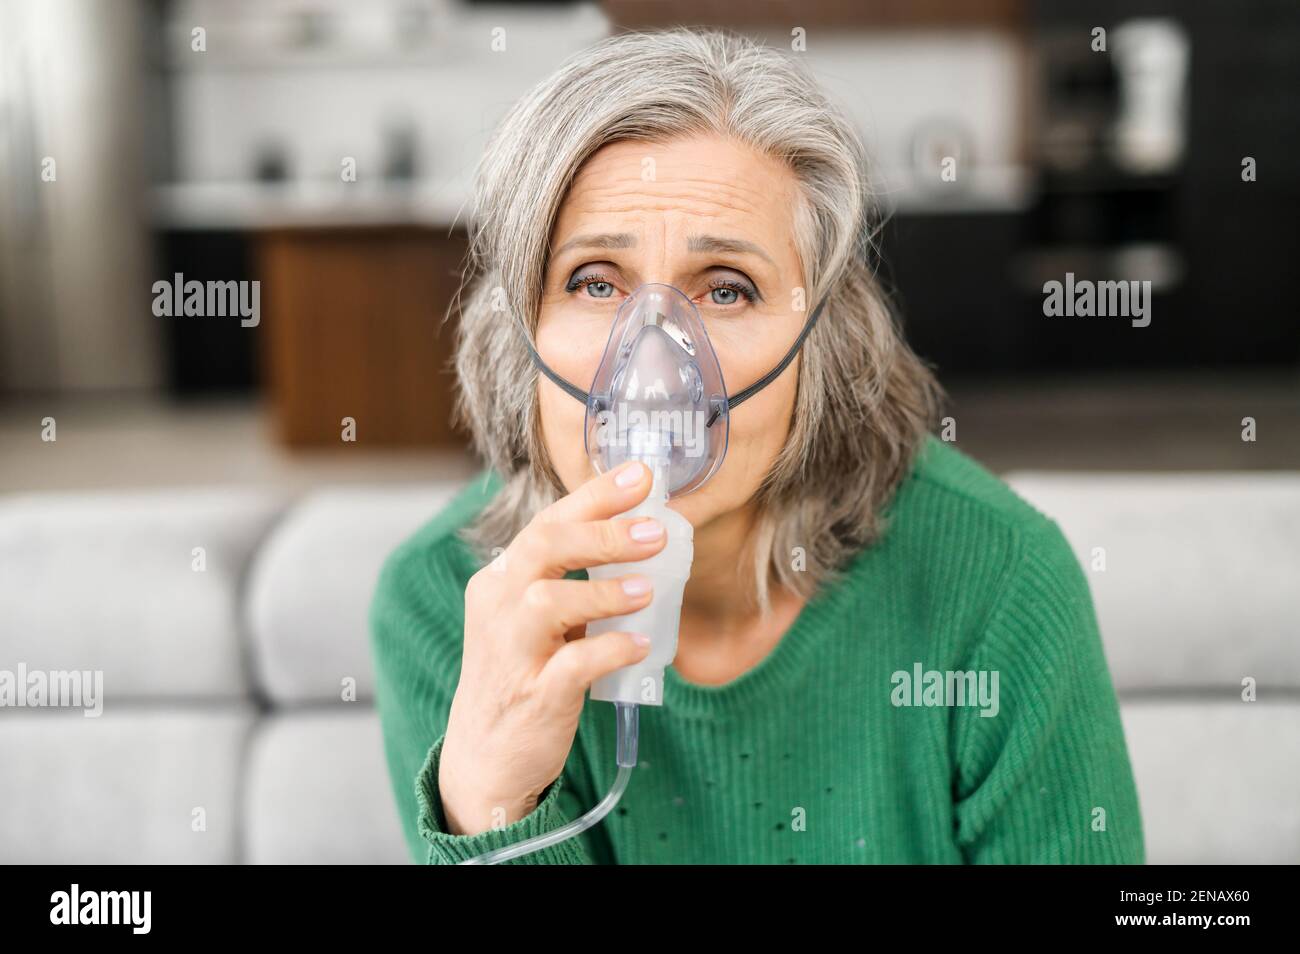 Donna anziana dai capelli grigi, ha molte rughe, si sente male, tenendo la maschera di ossigeno, mancanza di ossigeno, sensibile all'aria inquinata, seduta a casa su un auto-isolamento, guarda falcamente, facendo inalazione Foto Stock